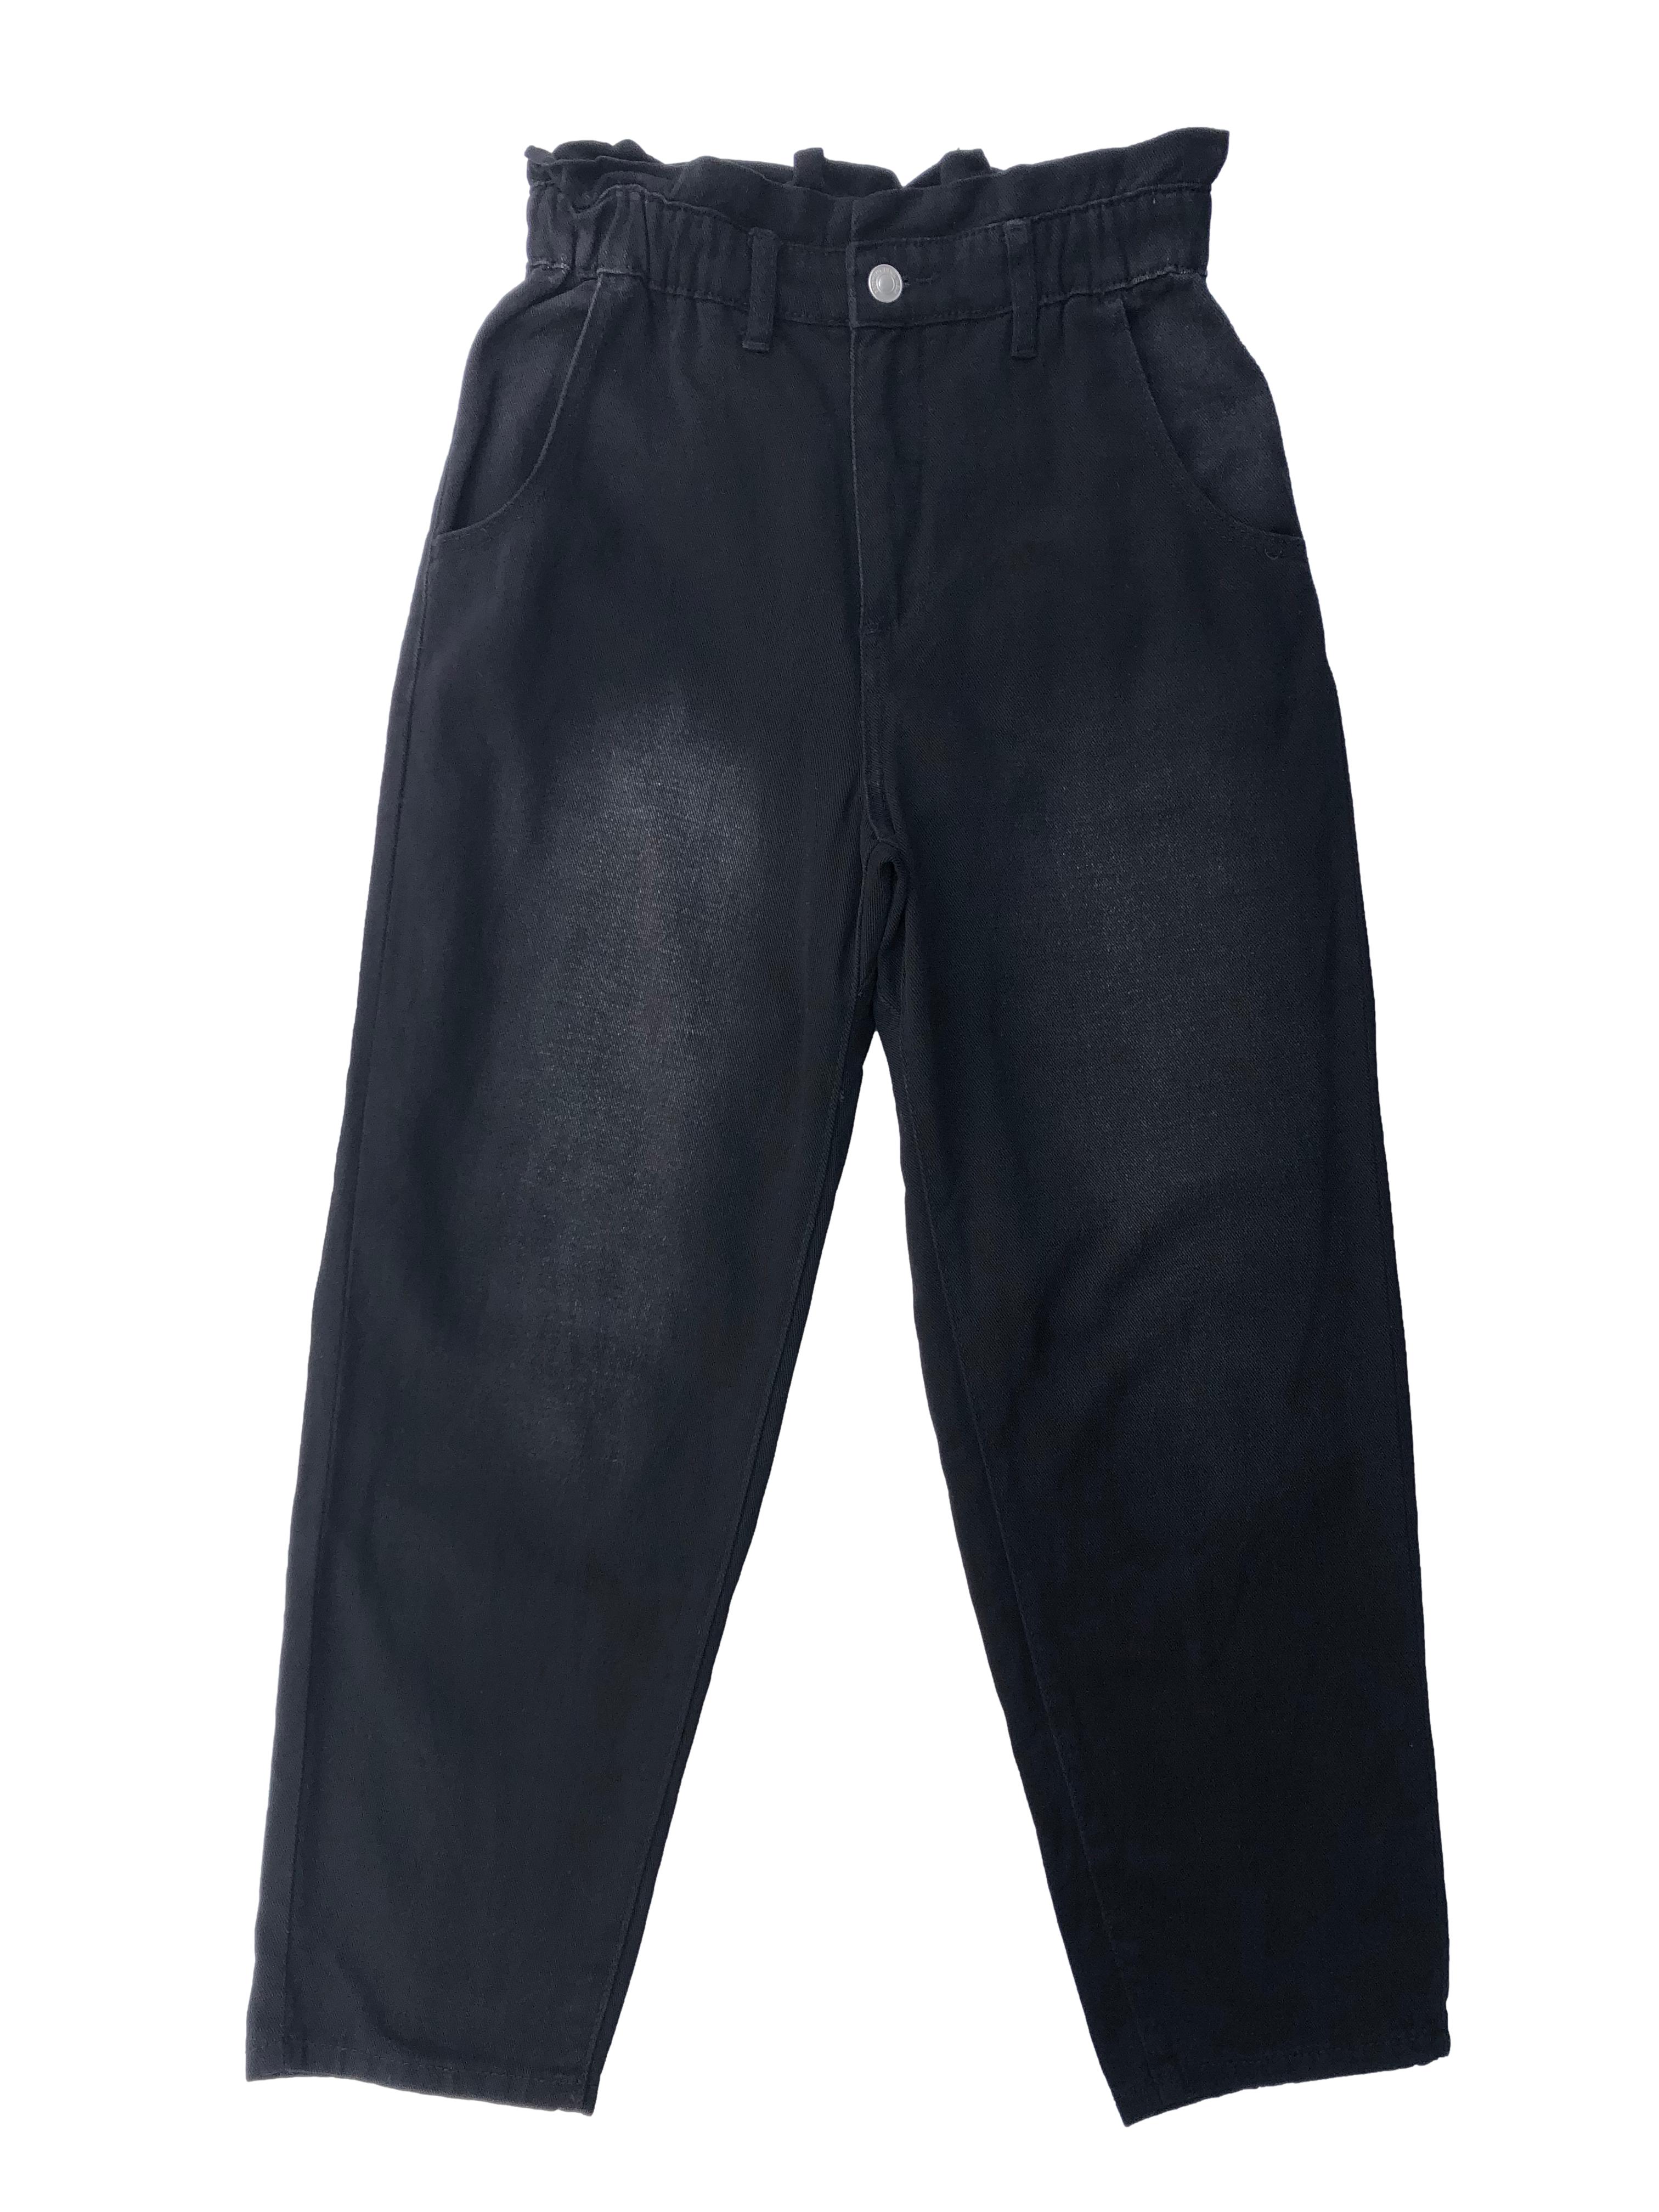 Paper bag jean negro Basement efecto lavado, de tiro alto con pretina elasticada y cuatro bolsillos. Cintura 64cm, Largo 95cm.